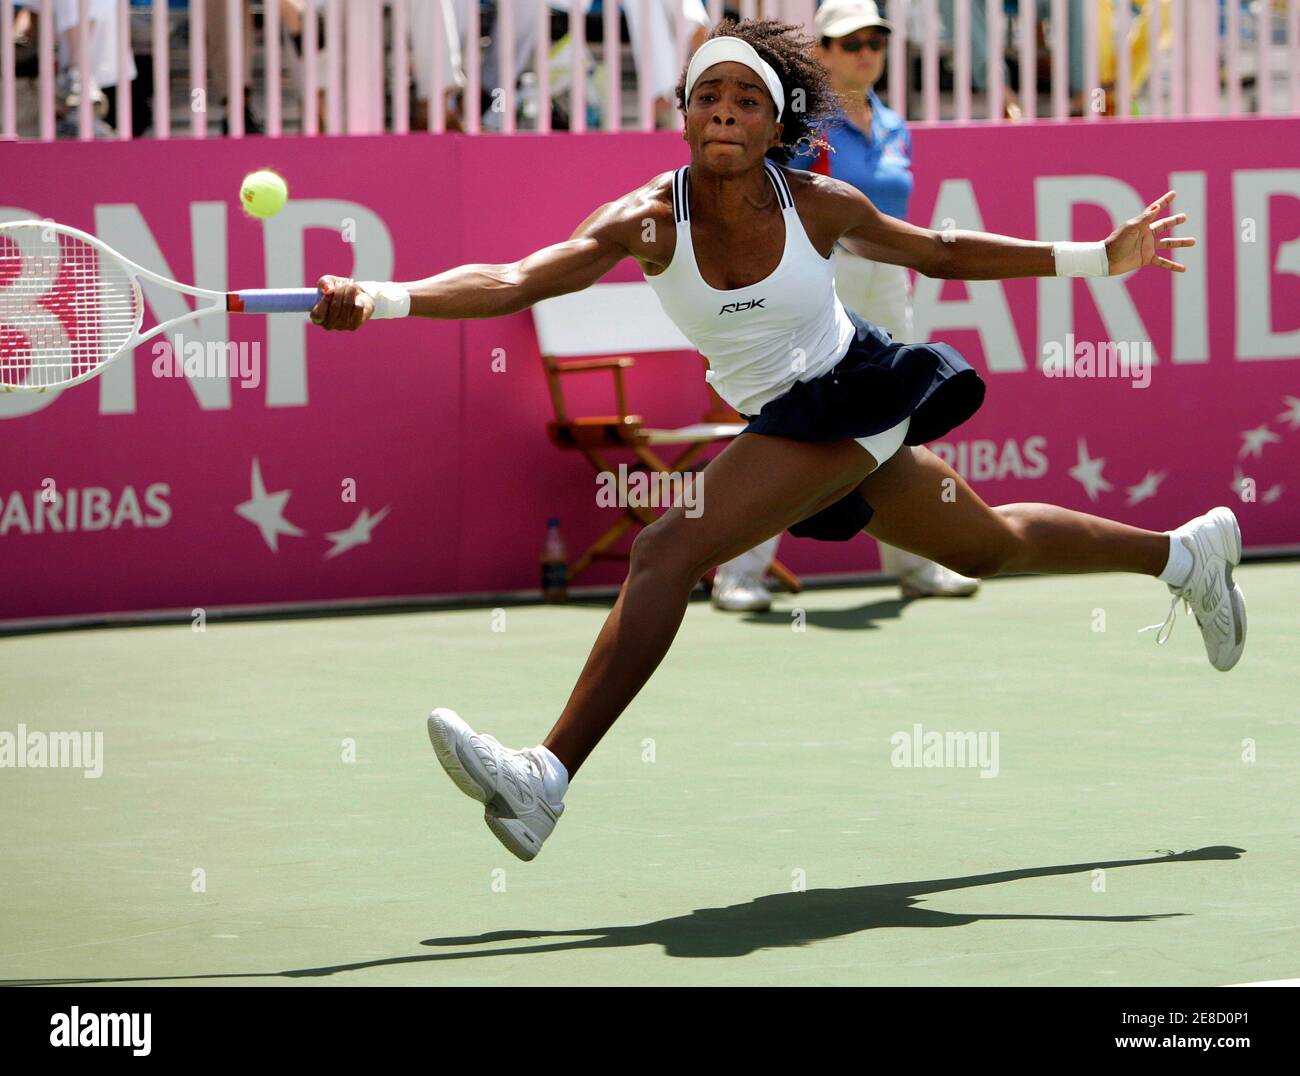 Venus Williams aus den USA trifft eine Rückkehr gegen Anna Chakvetadze aus Russland während ihres Einzelspieles im Fed Cup Halbfinale Tennis in Stowe, Vermont 15. Juli 2007. REUTERS/Brian Snyder (USA) Stockfoto